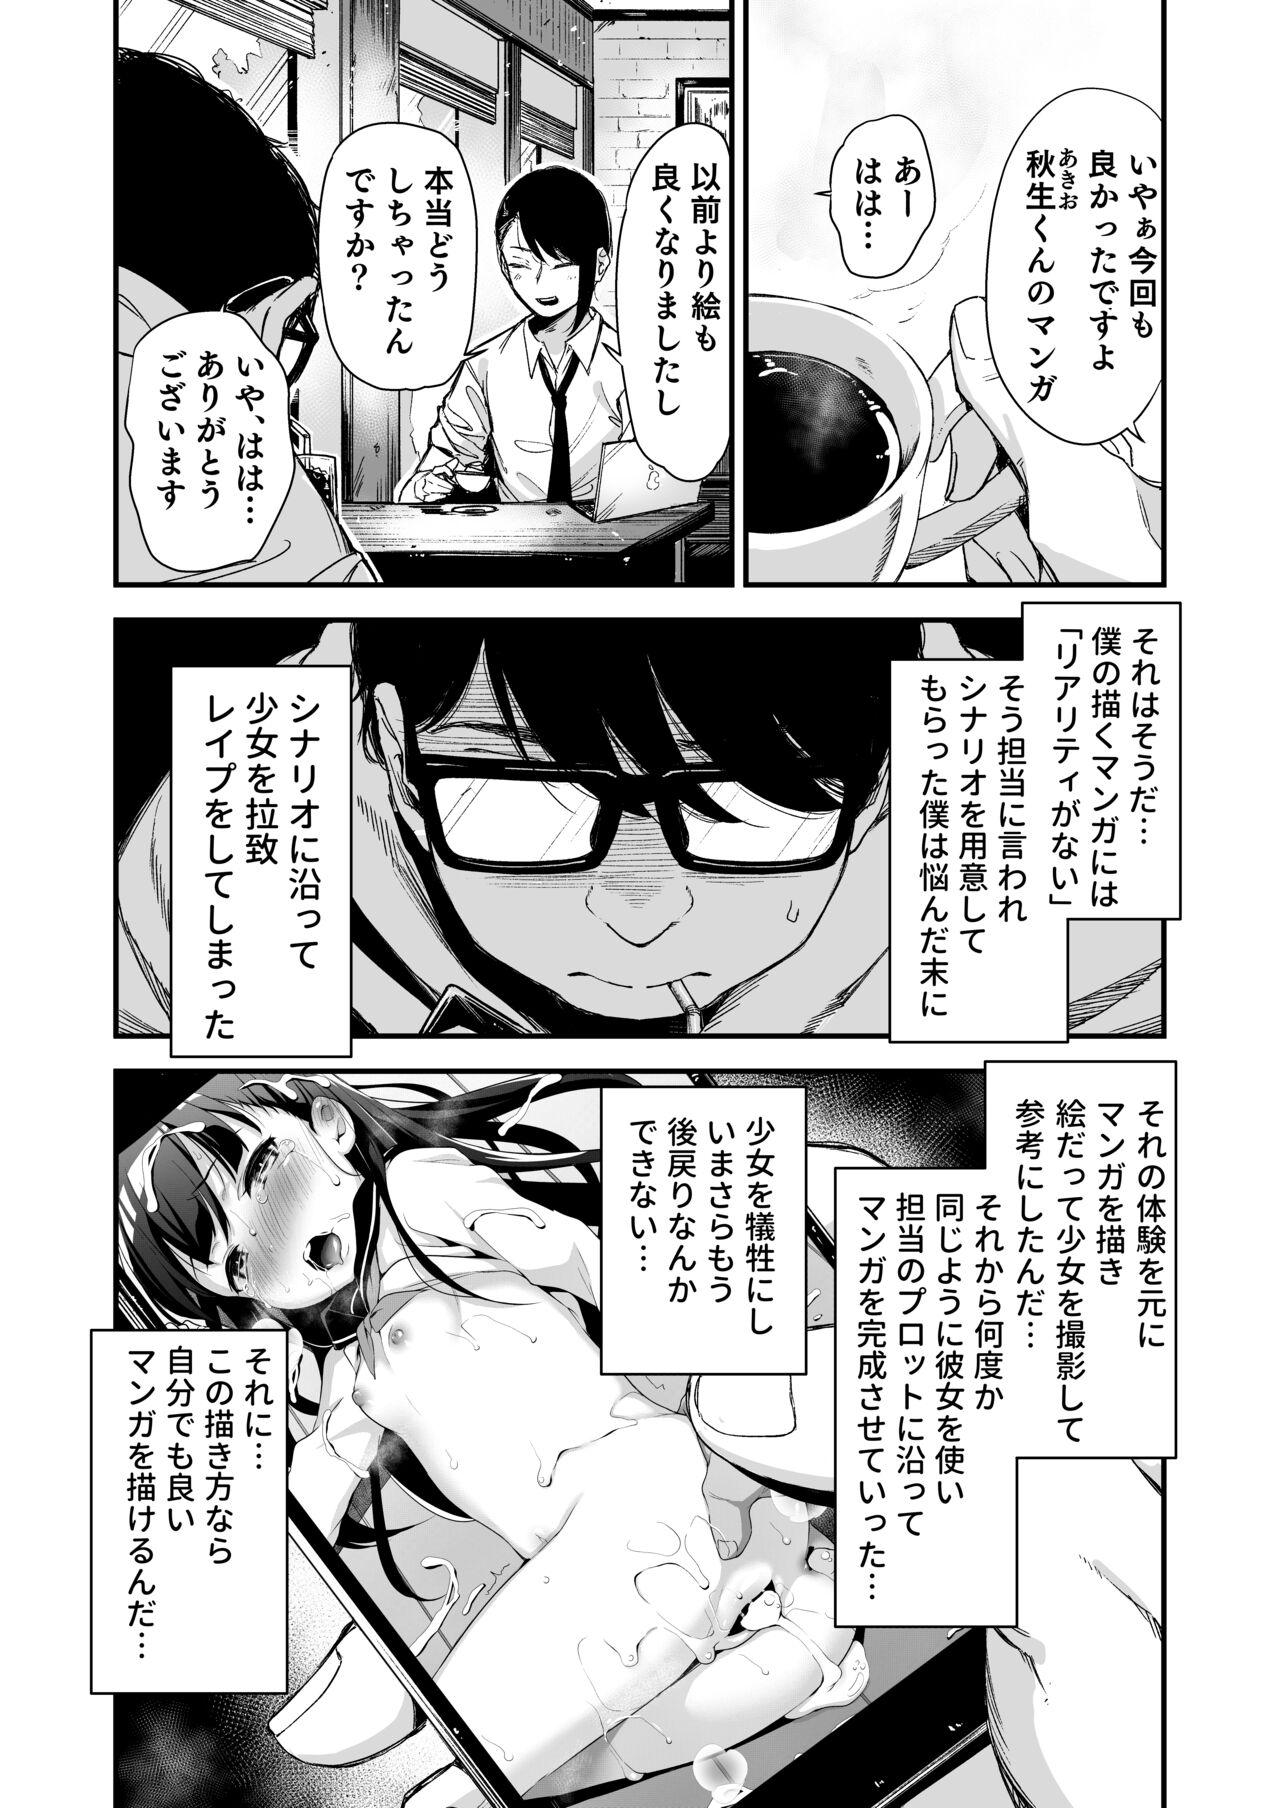 Hardcore Do-M Shoujo wa, Manga no Naka de. - Original Gaygroup - Page 4